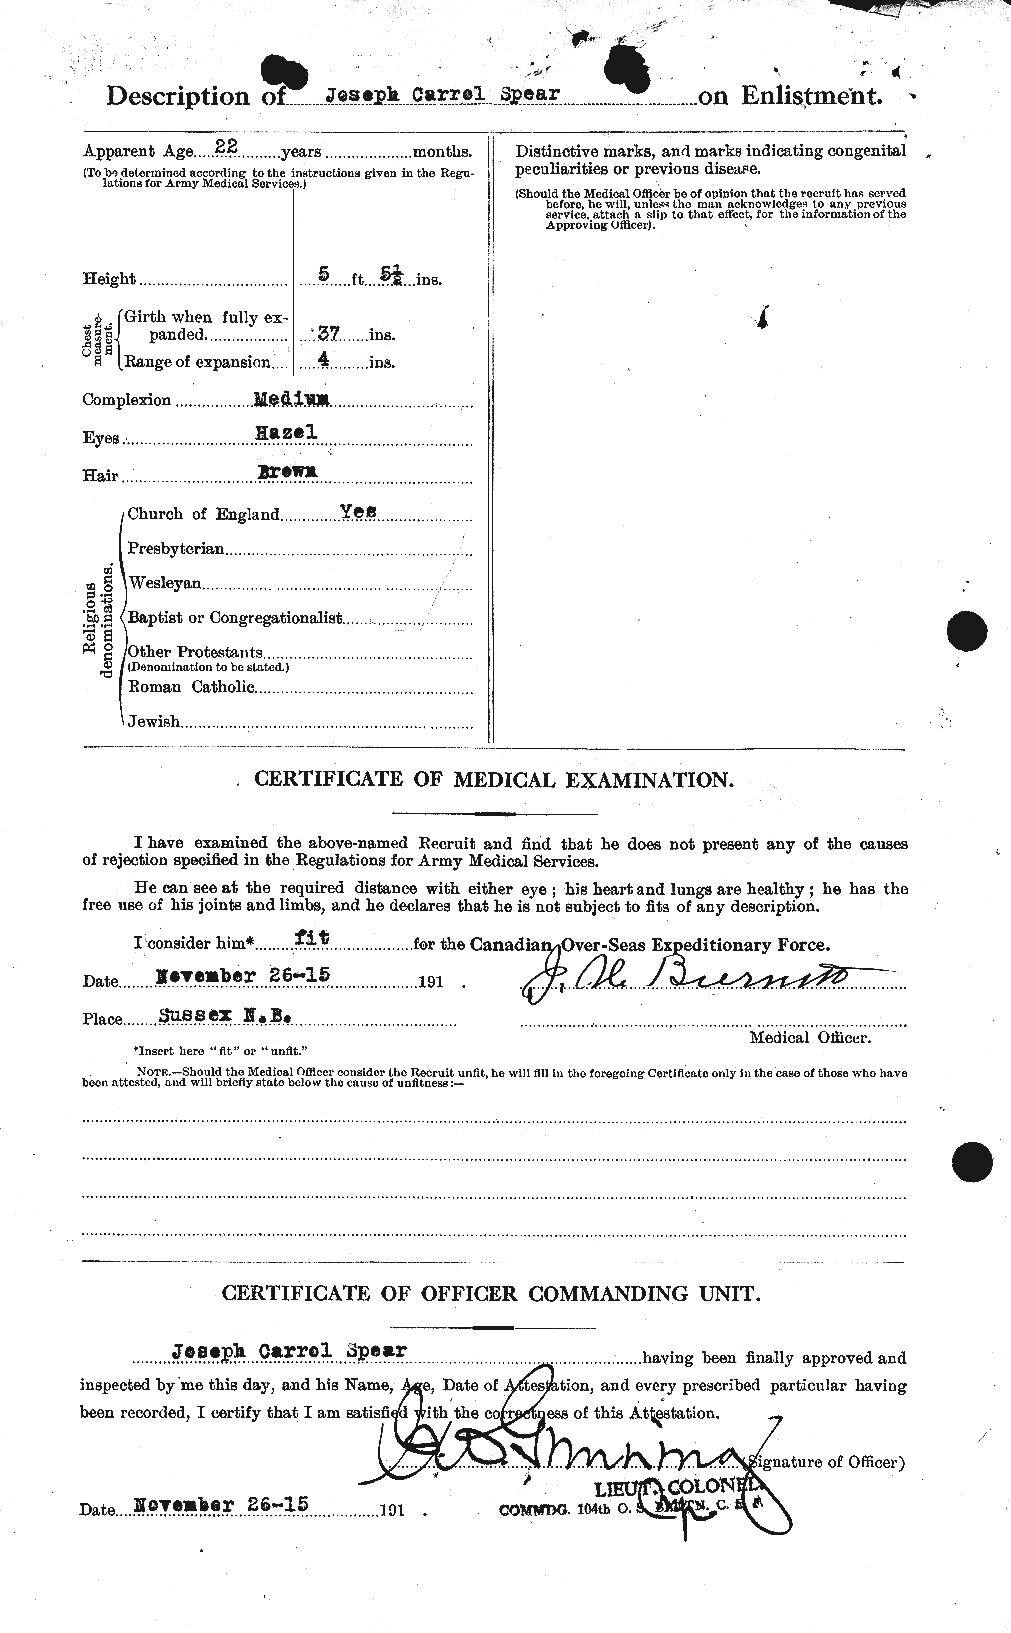 Dossiers du Personnel de la Première Guerre mondiale - CEC 110833b